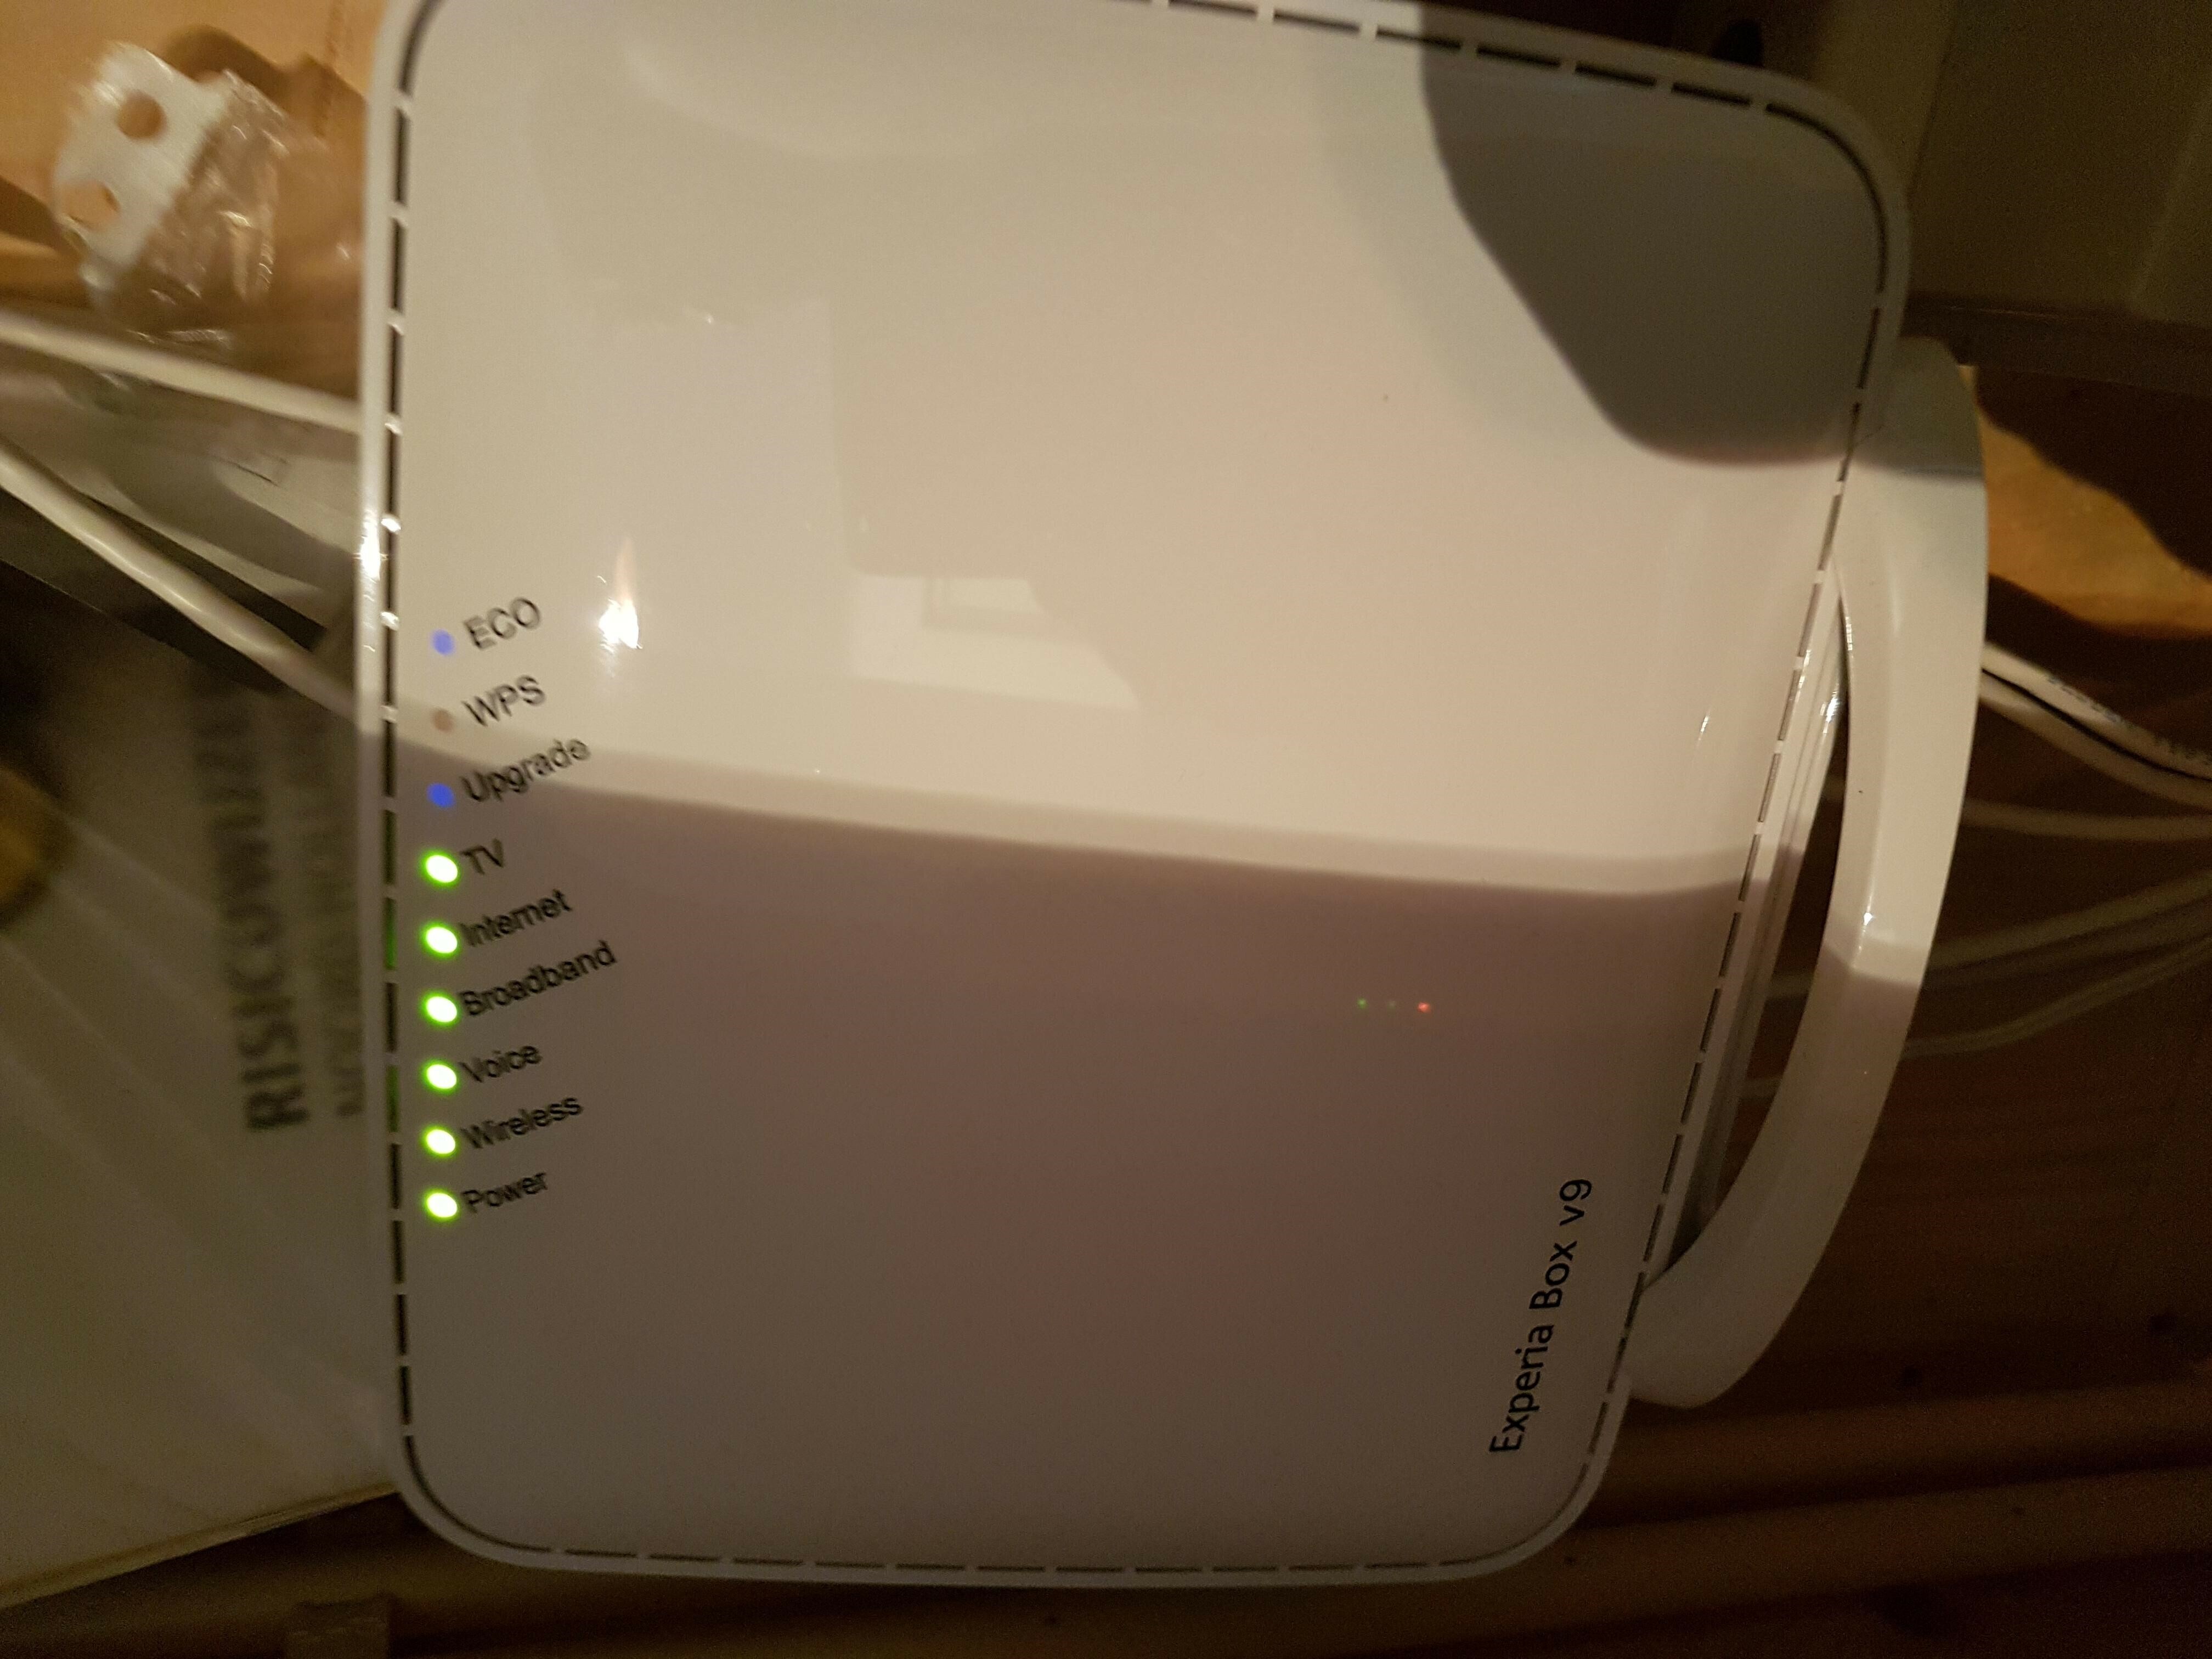 Slordig Groene bonen Oproepen Wifi van Experiabox V9 internet valt steeds weg, nu ook met wifiversterkers  | KPN Community